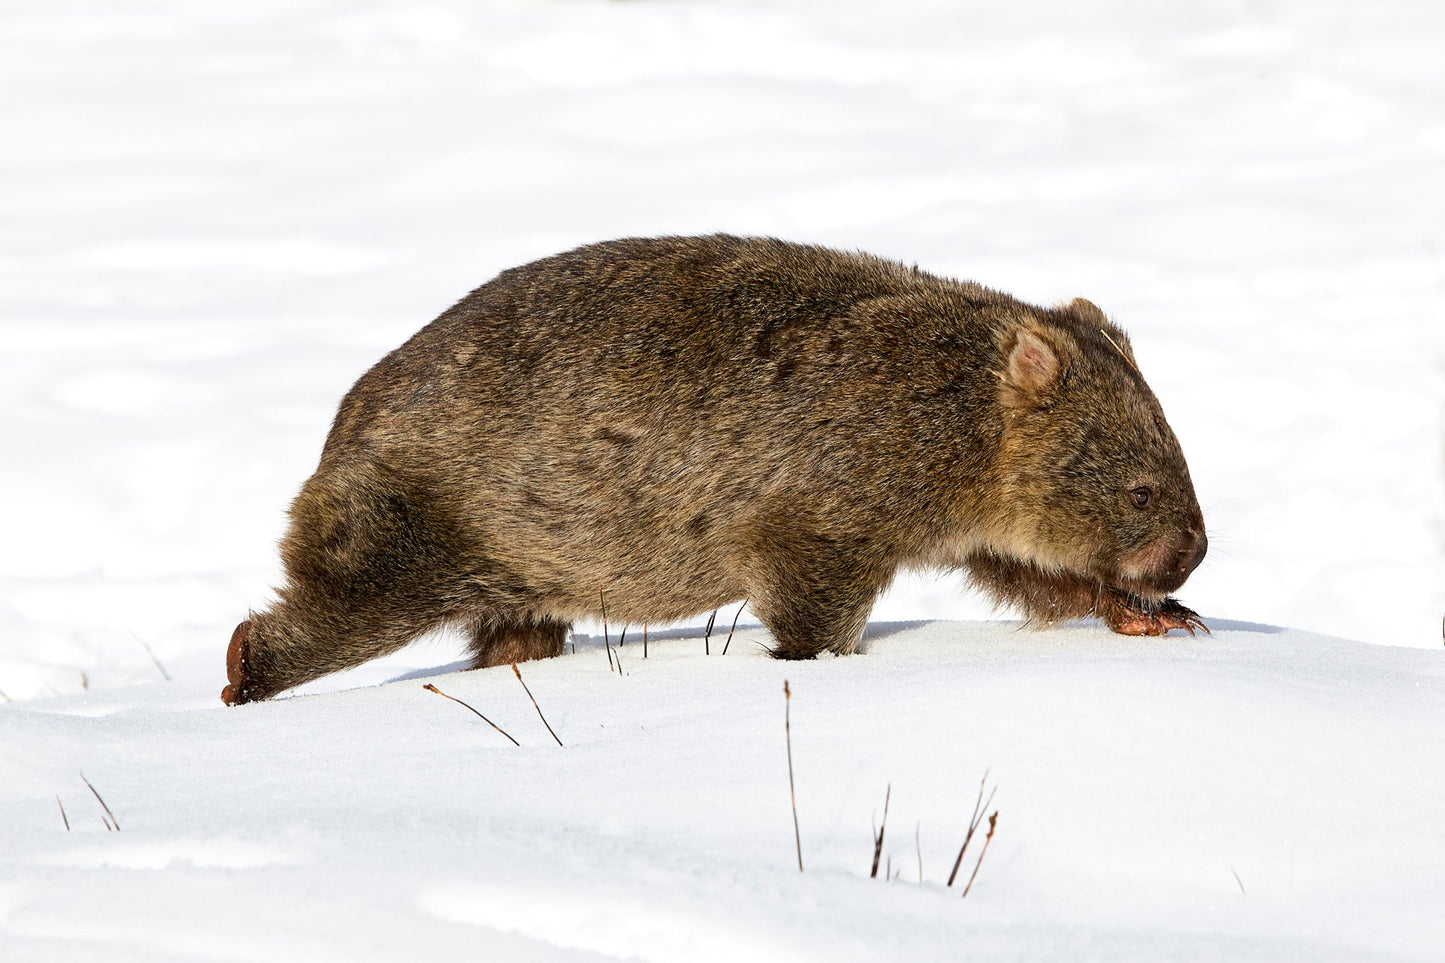 Wombat walk - Wombat, Cradle Mountain Tasmania